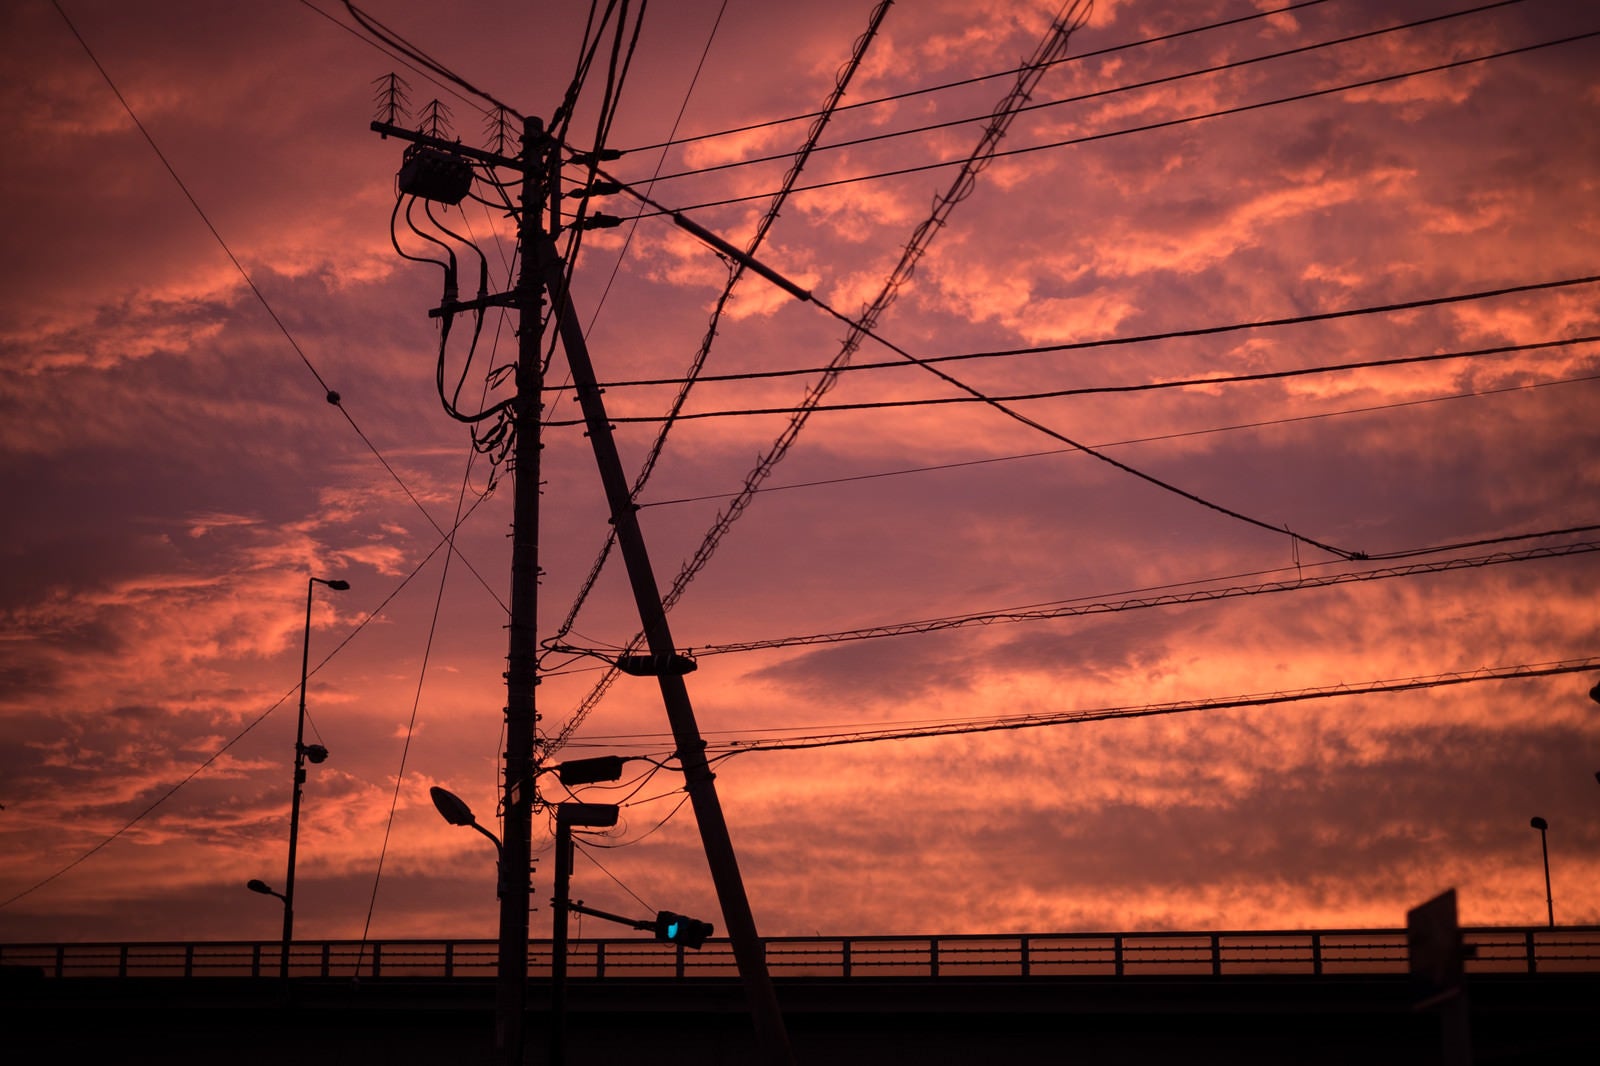 「夕暮れと電柱のシルエット」の写真